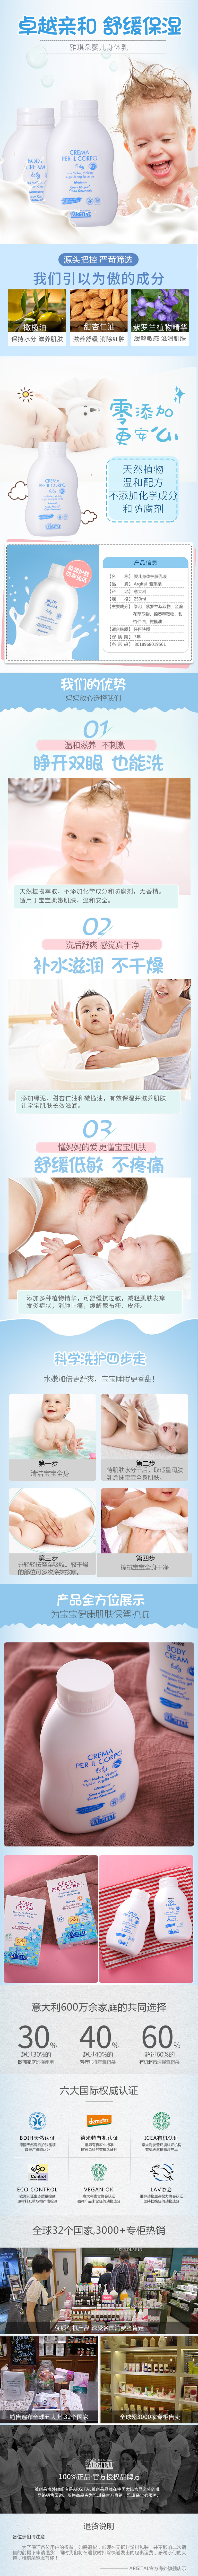 婴儿滋润霜(图1)